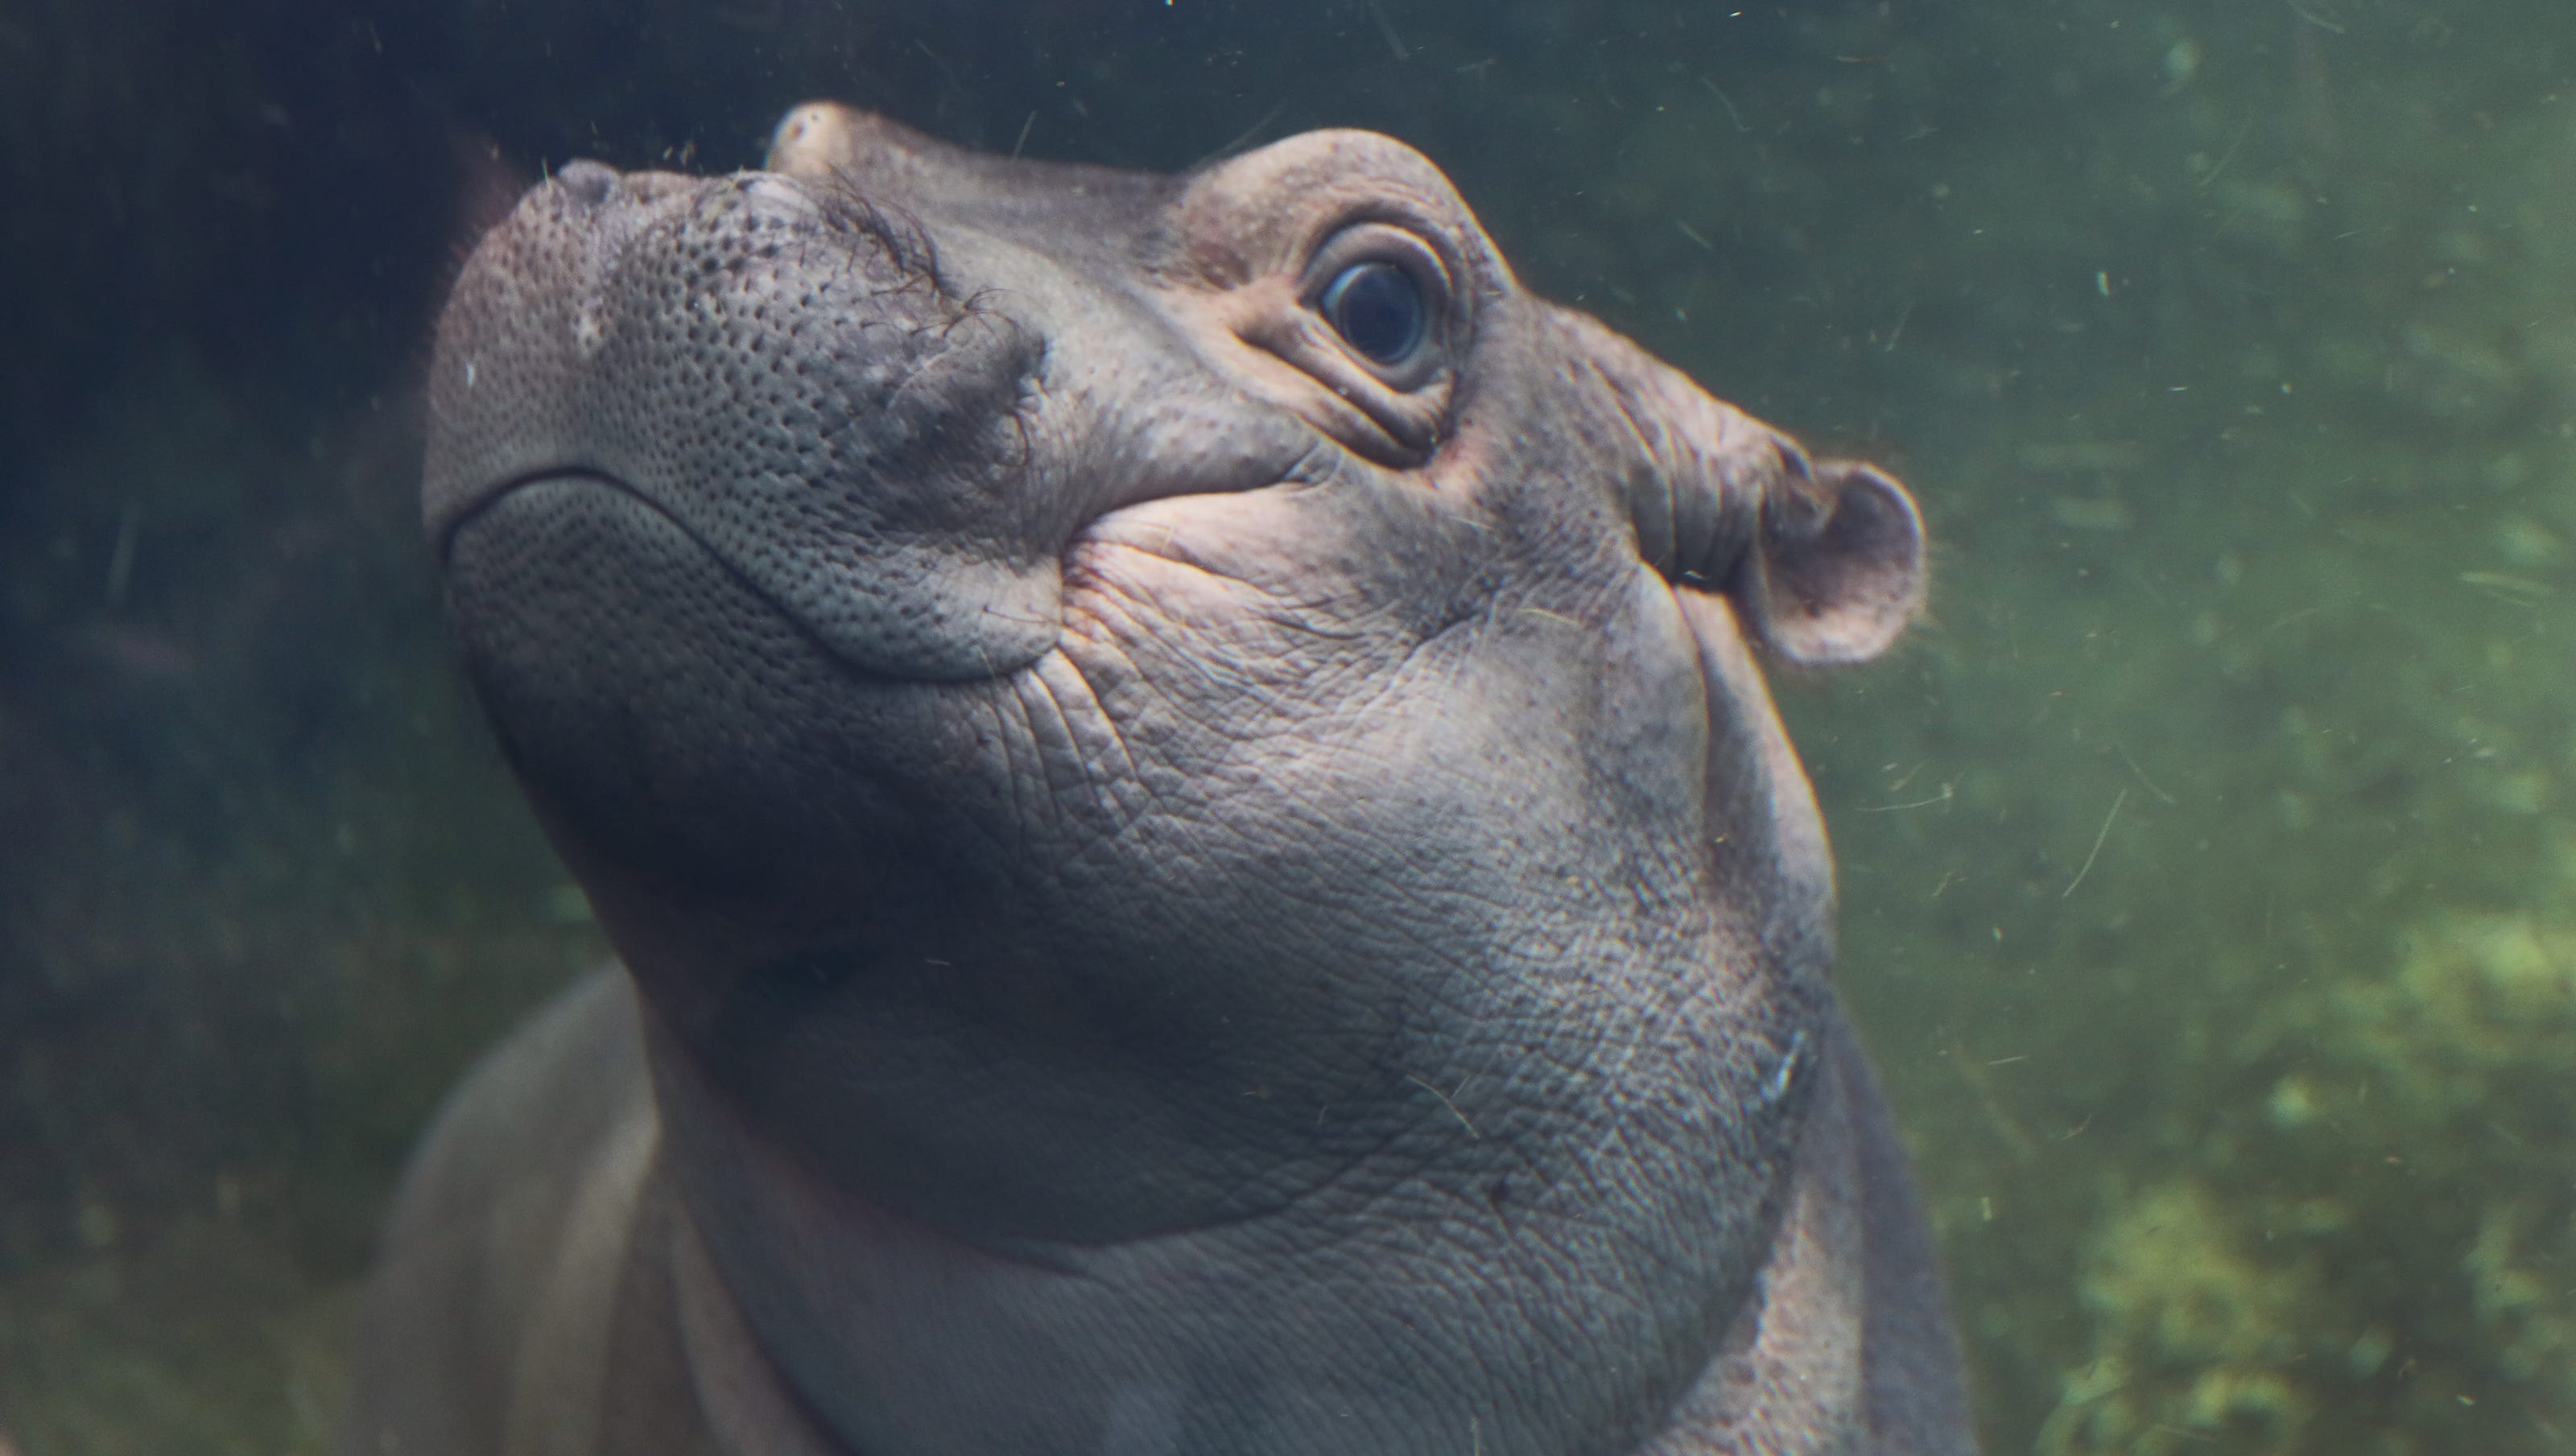 It's Fiona the hippo's birthday. She's already had a remarkable life.